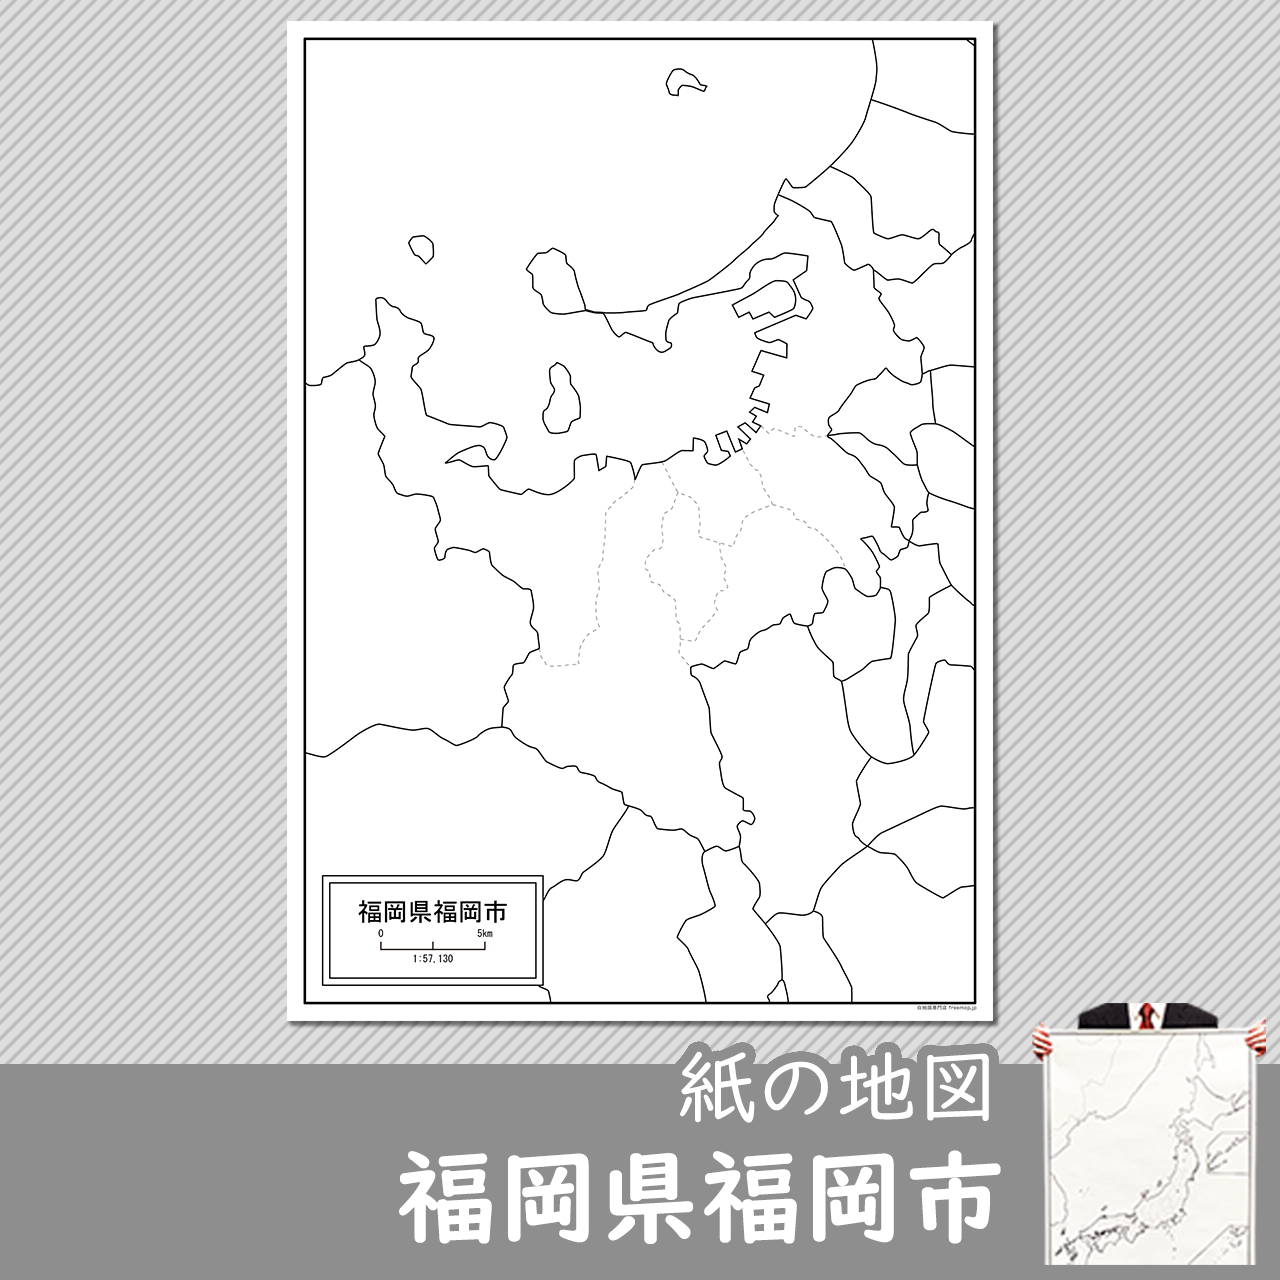 福岡市の紙の白地図のサムネイル